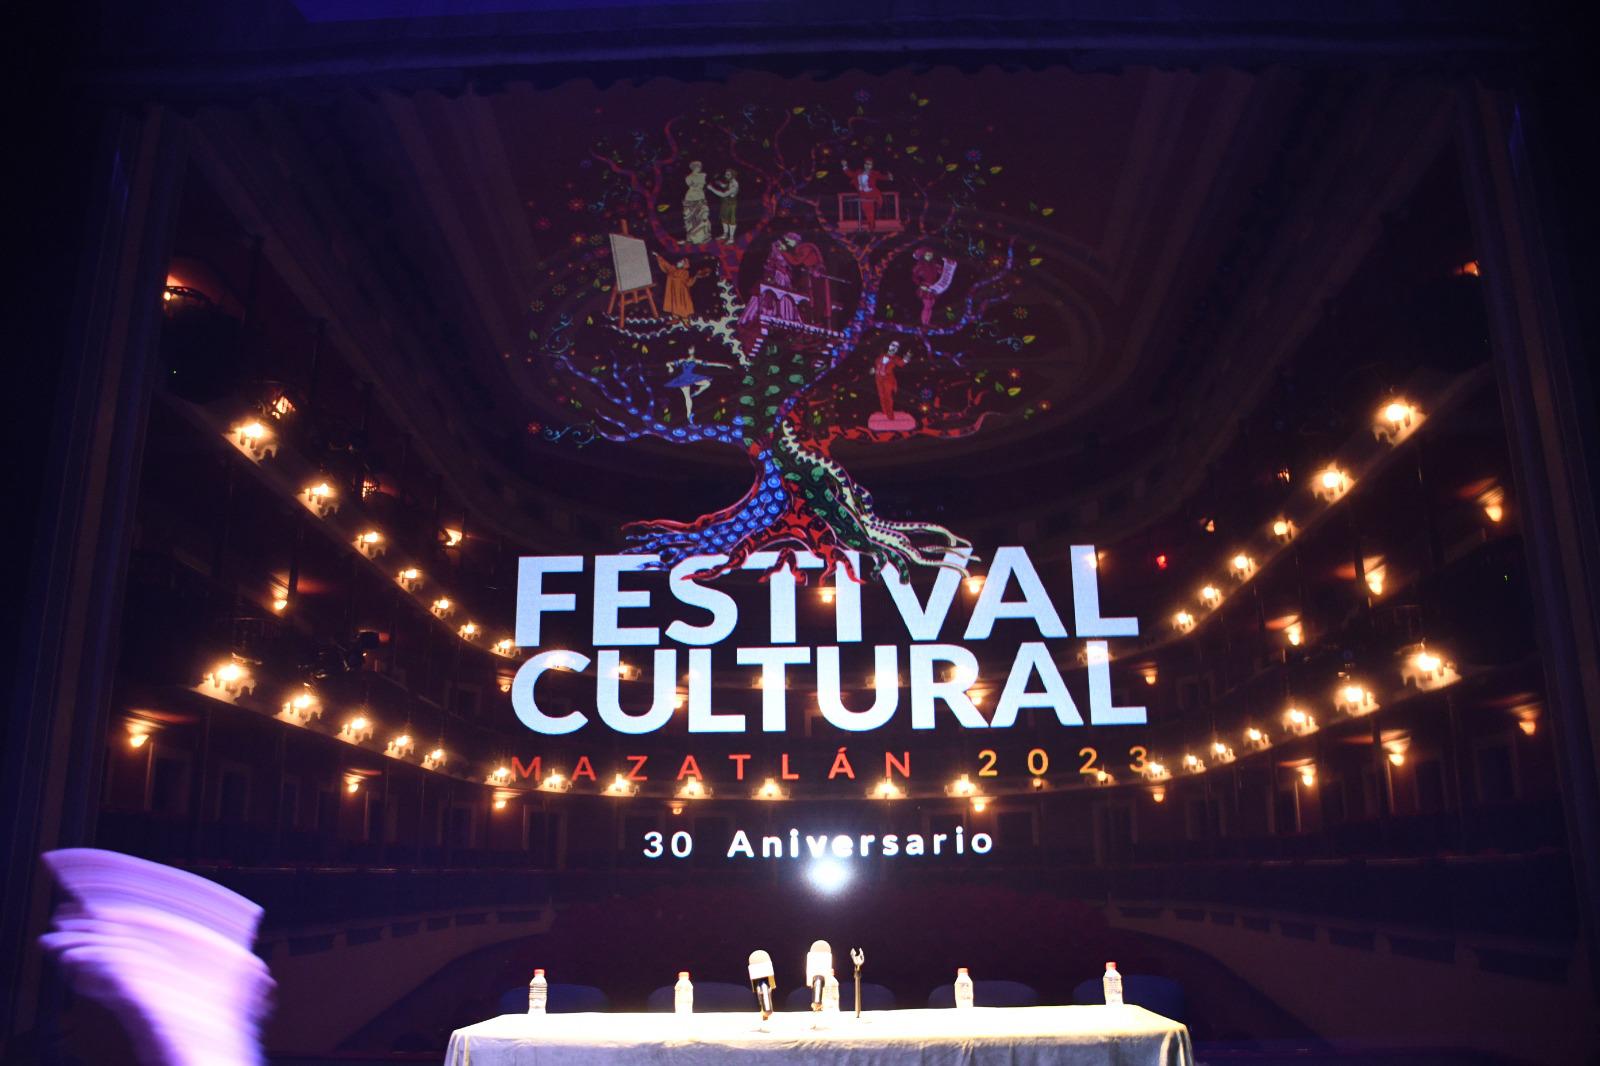 $!Con una nutrida cartelera llena de simbolismos, celebrarán 30 años del Festival Cultural Mazatlán